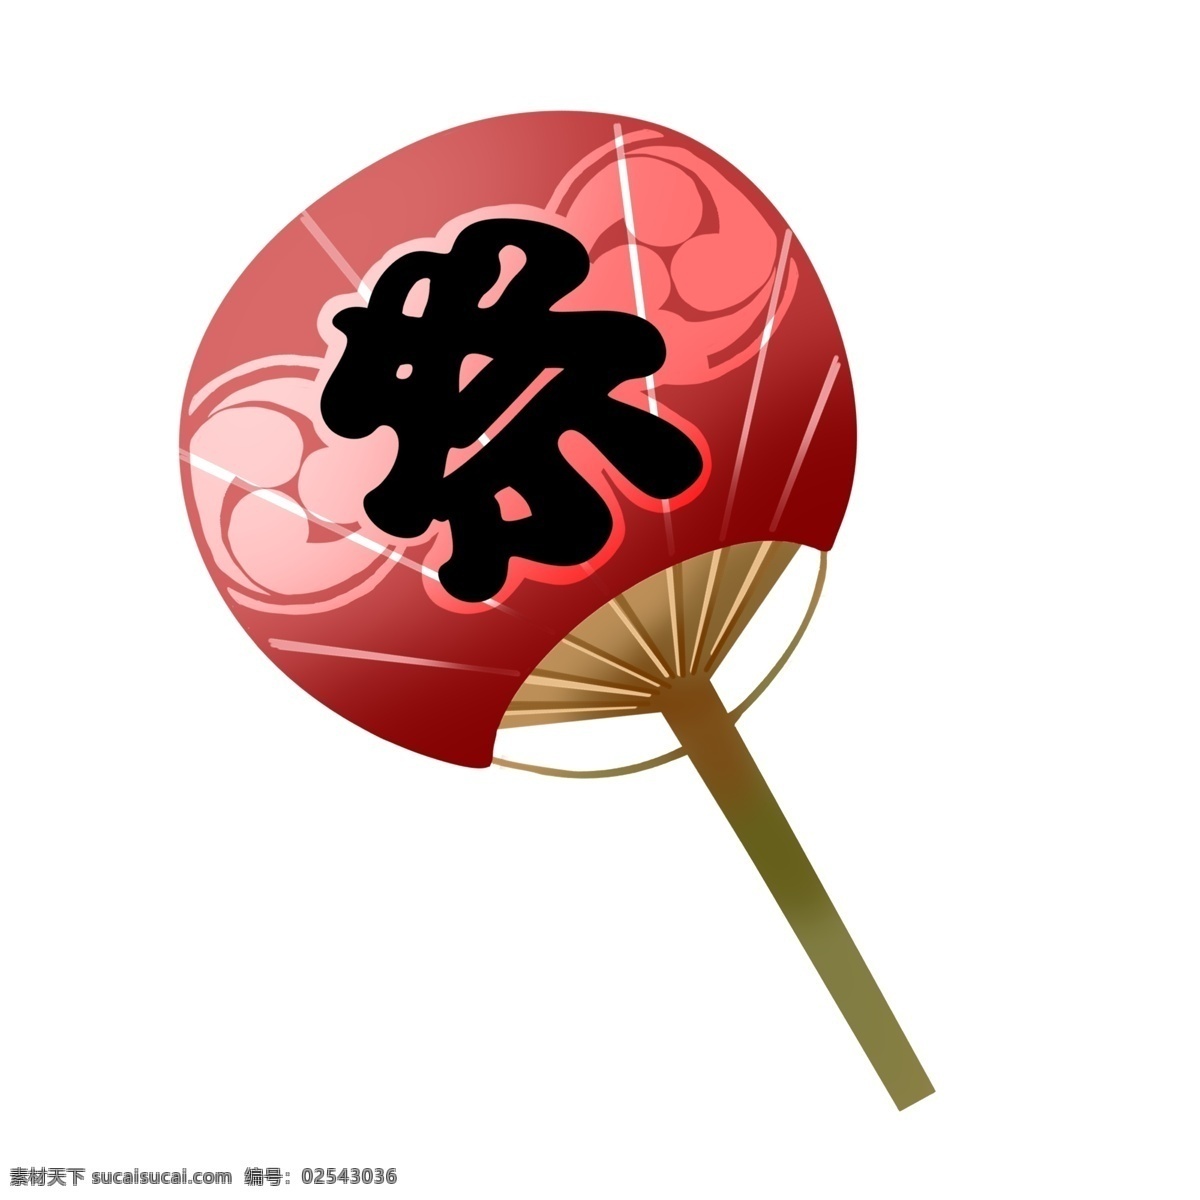 日本 红色 扇子 插画 红色的扇子 卡通插画 日本插画 日本物品 日本小物 日本风情 日本的扇子